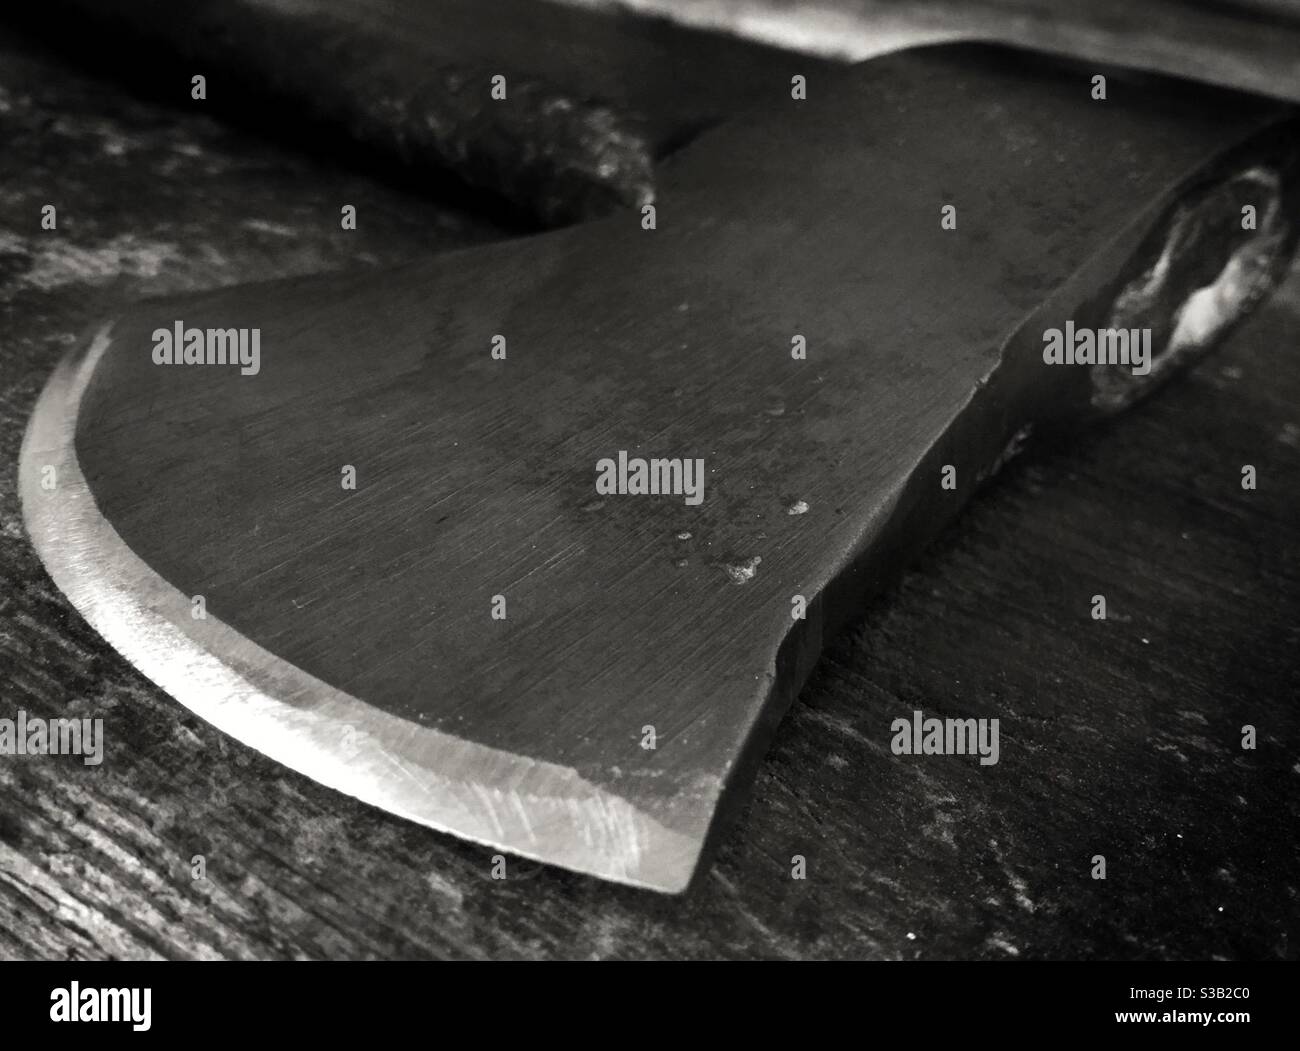 Sharpened axe blade, Catalonia, Spain Stock Photo - Alamy